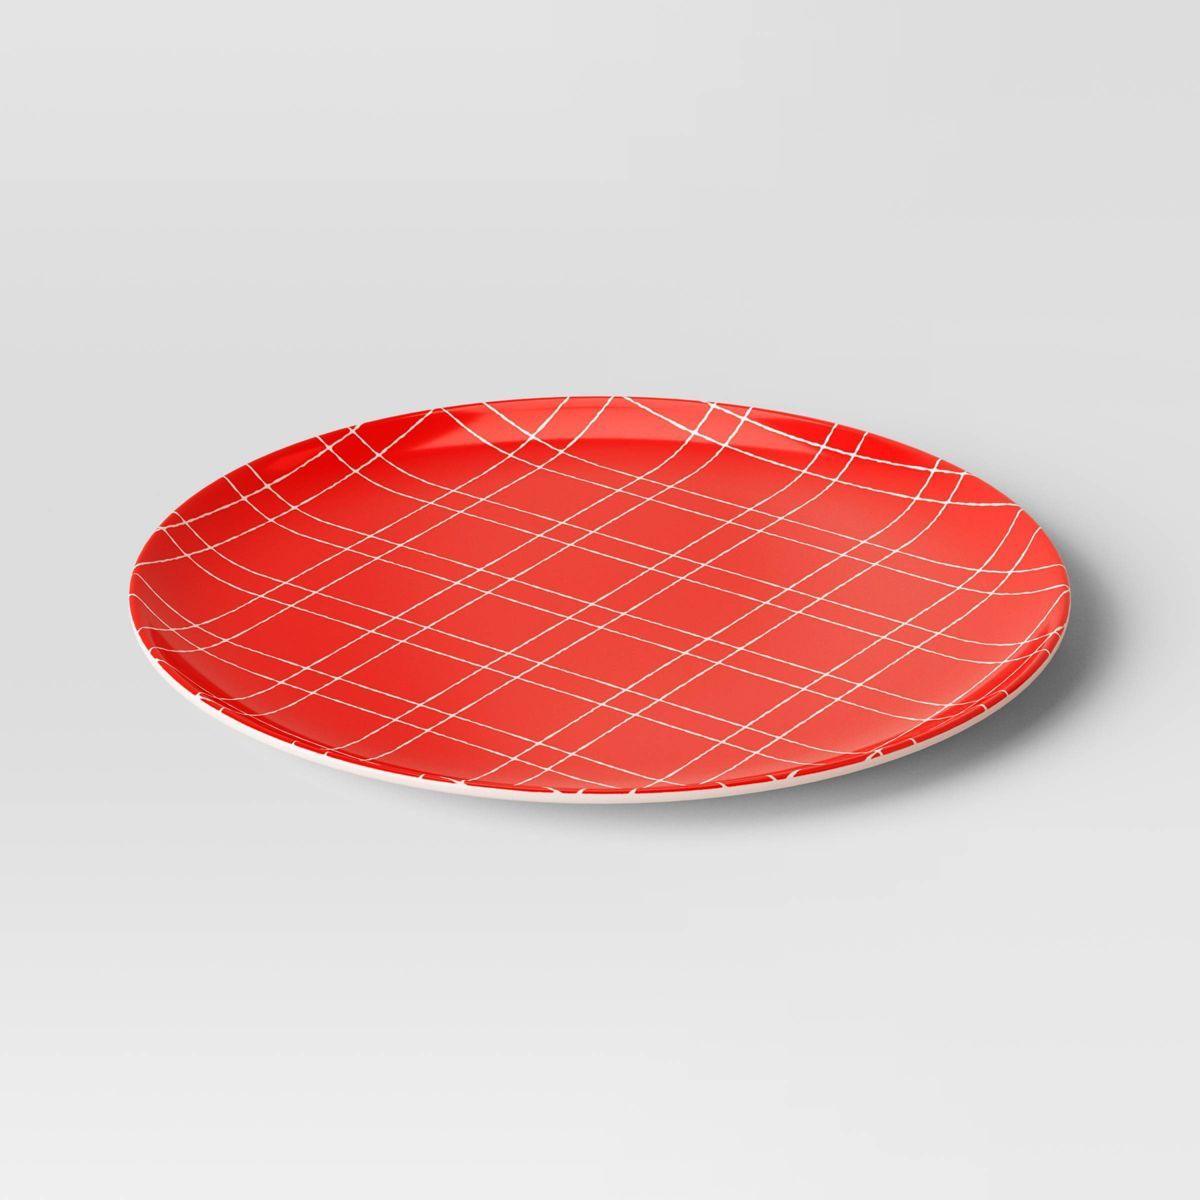 10" Holiday Melamine Plaid Dinner Plate Red - Wondershop™ | Target